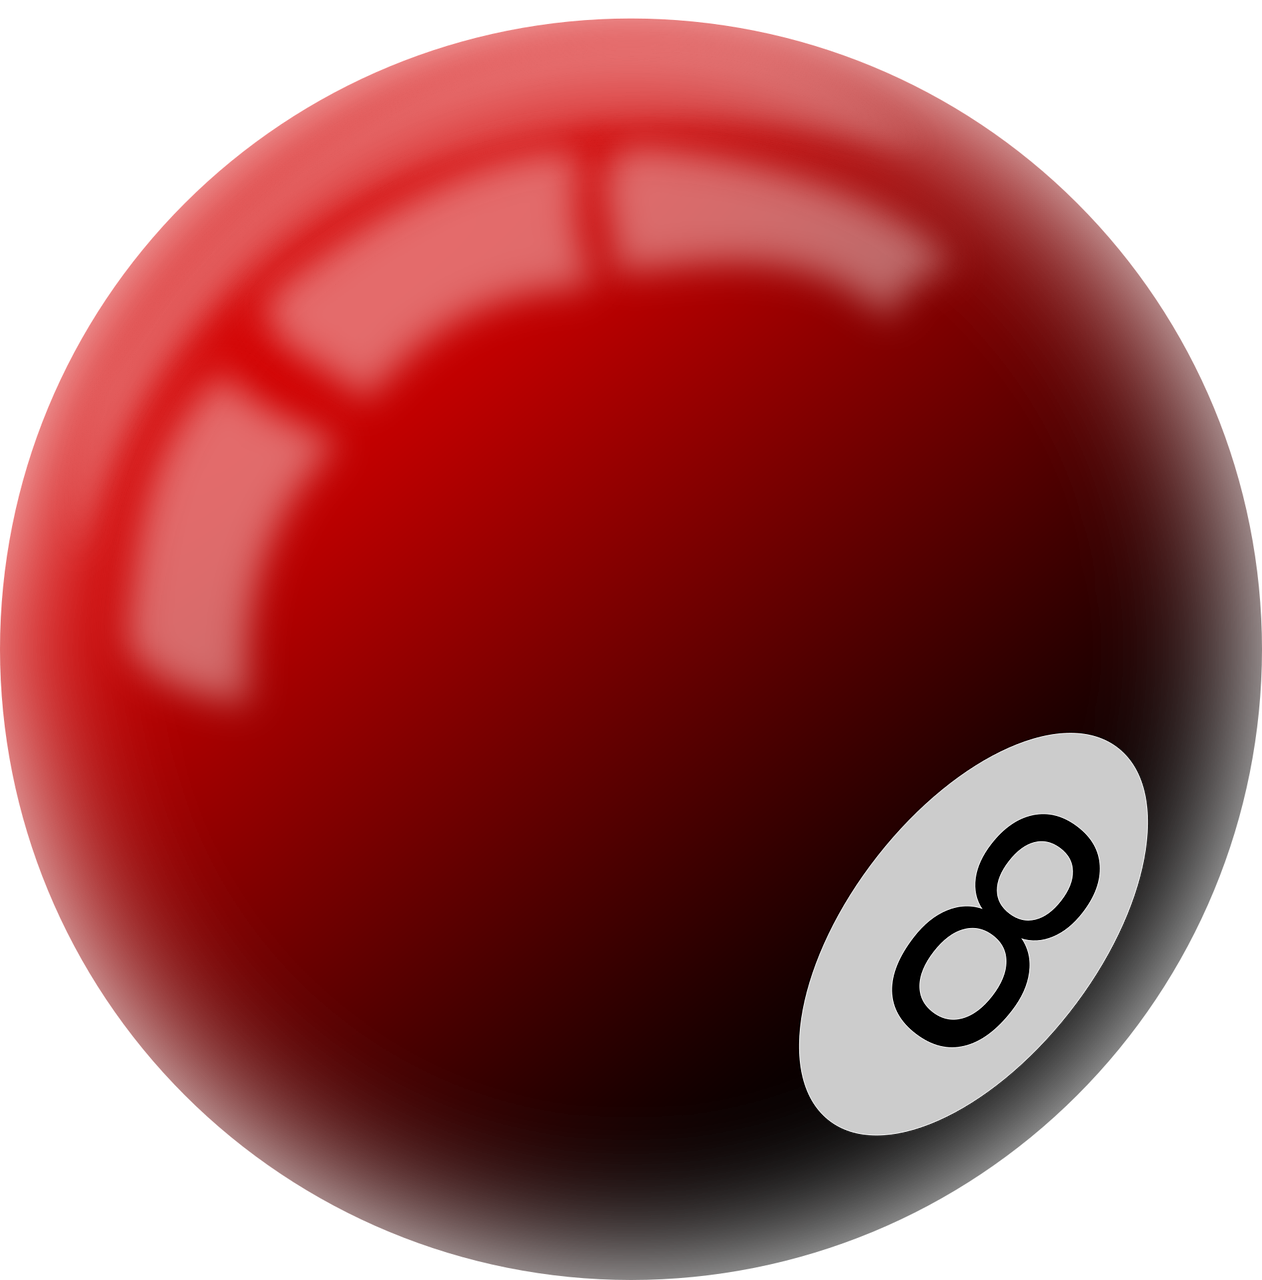 Billiard Red Balls Transparent Background